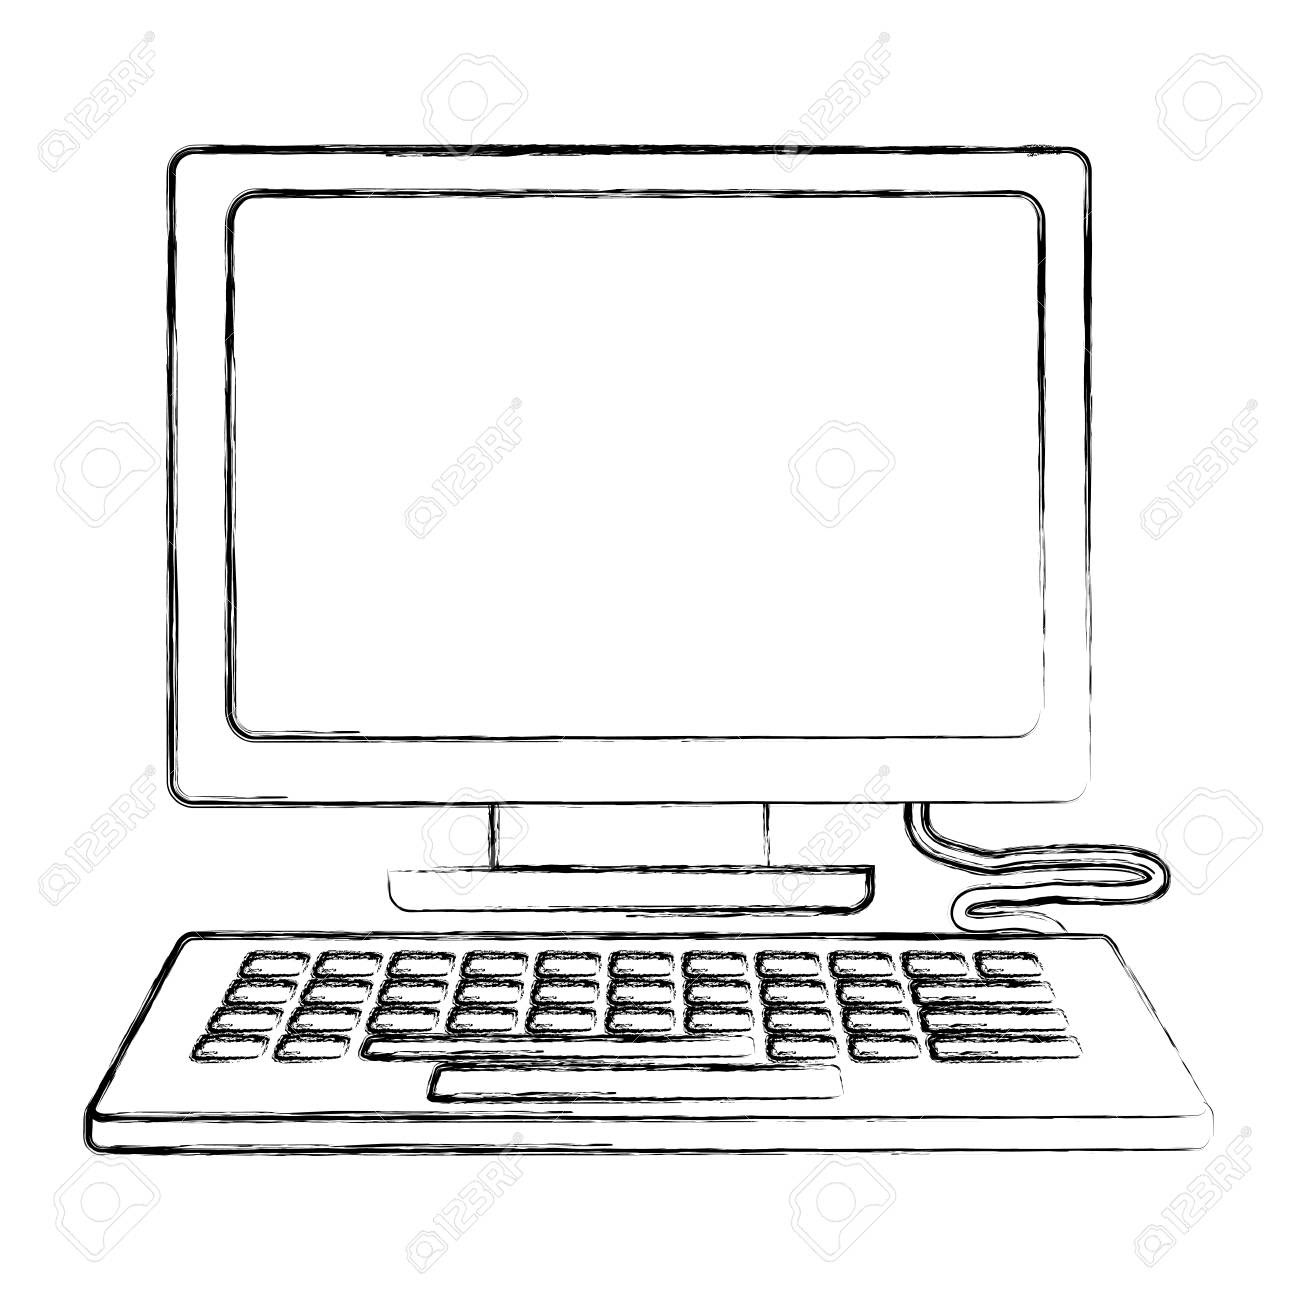 Рисунок компьютера для грамот